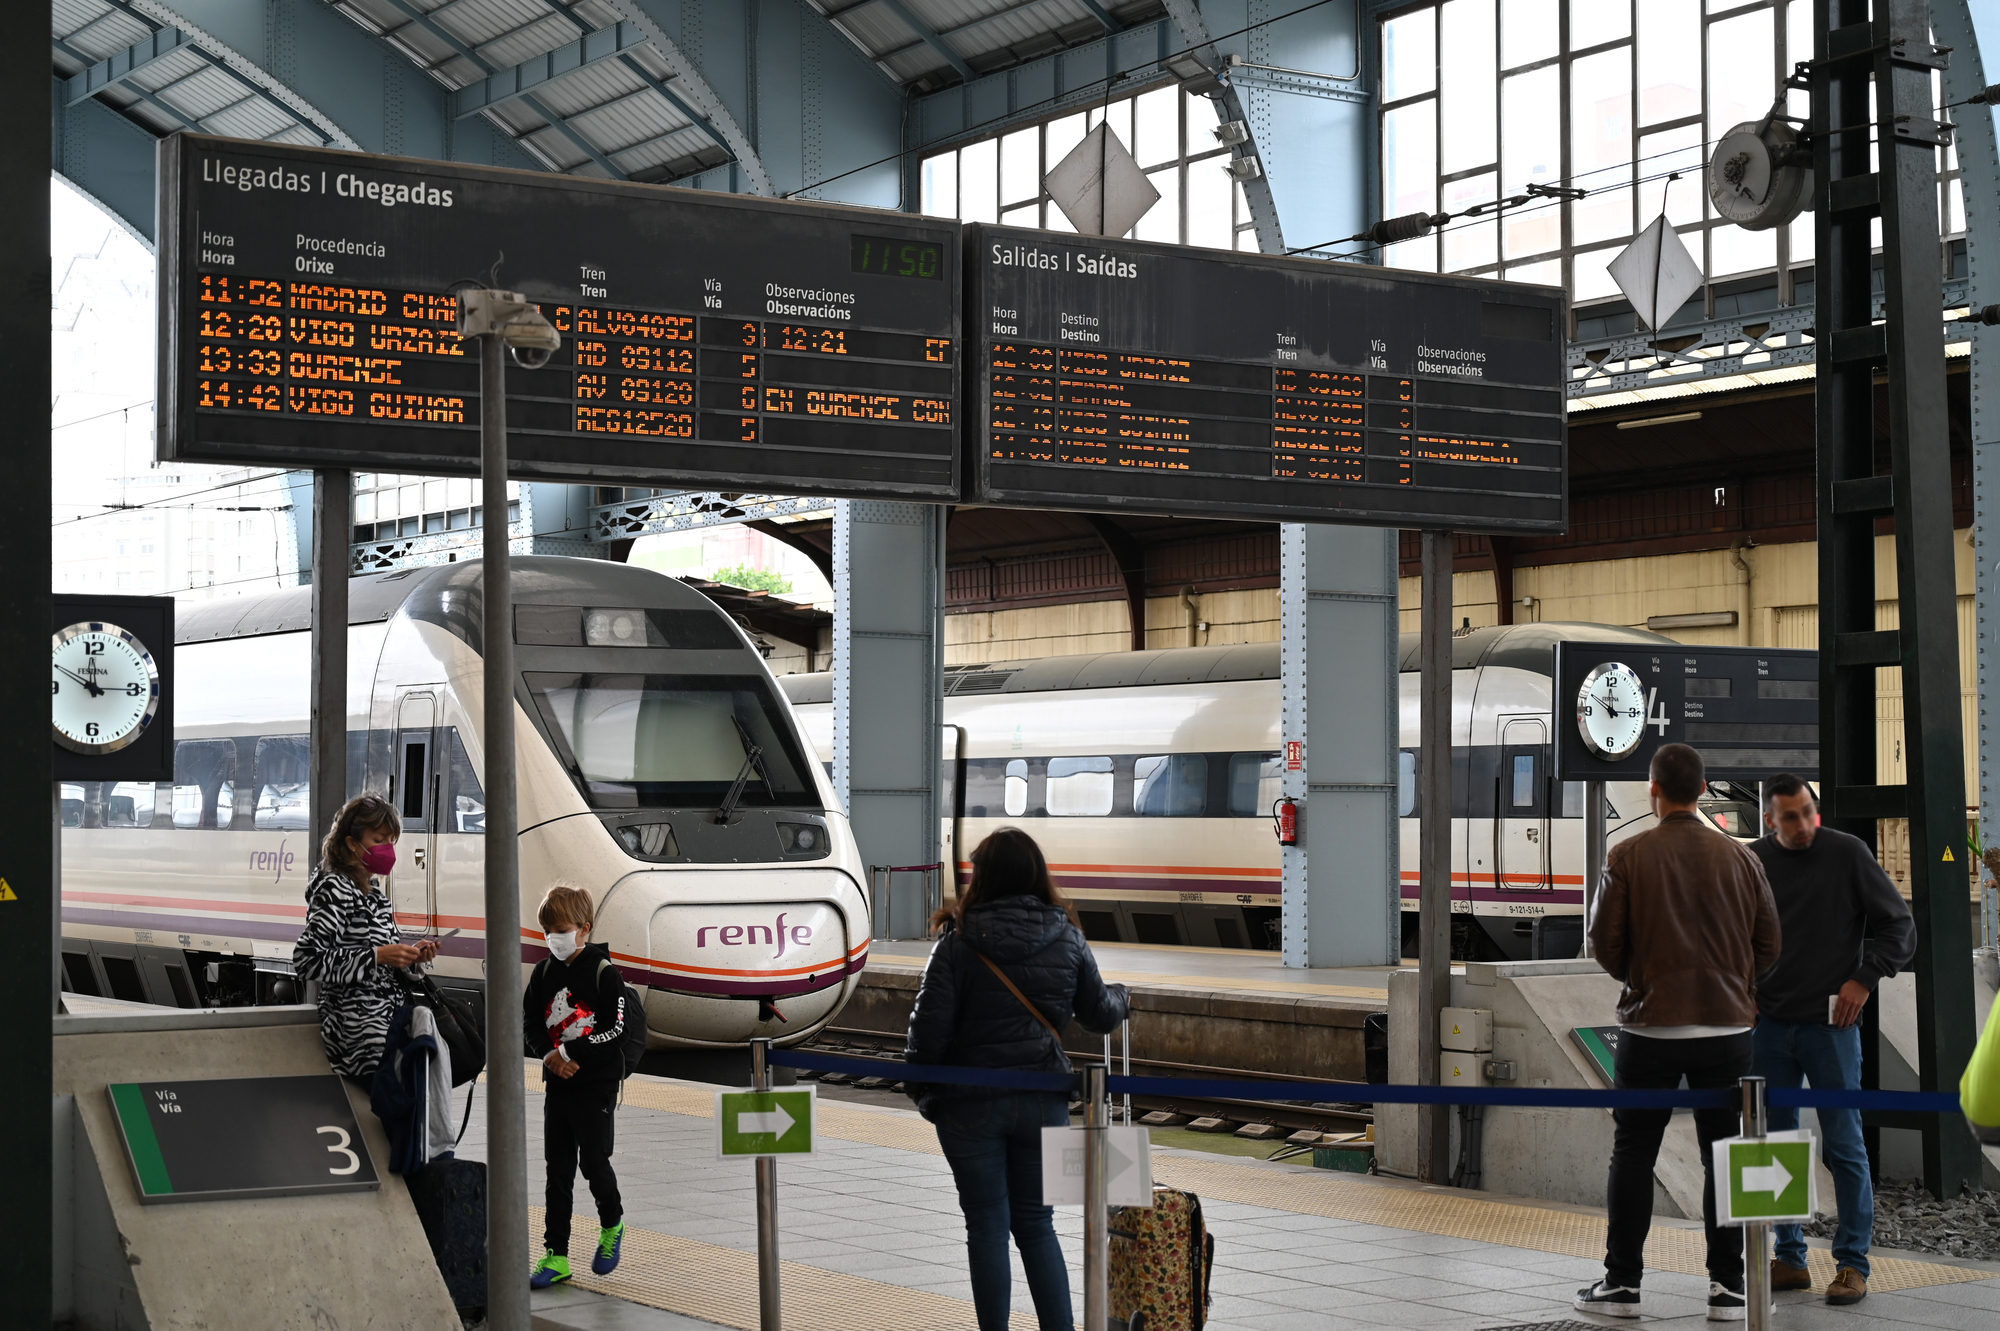 Компания Renfe продает билеты на поезда из Мадрида до Барселоны и Валенсии по цене от 7 евро